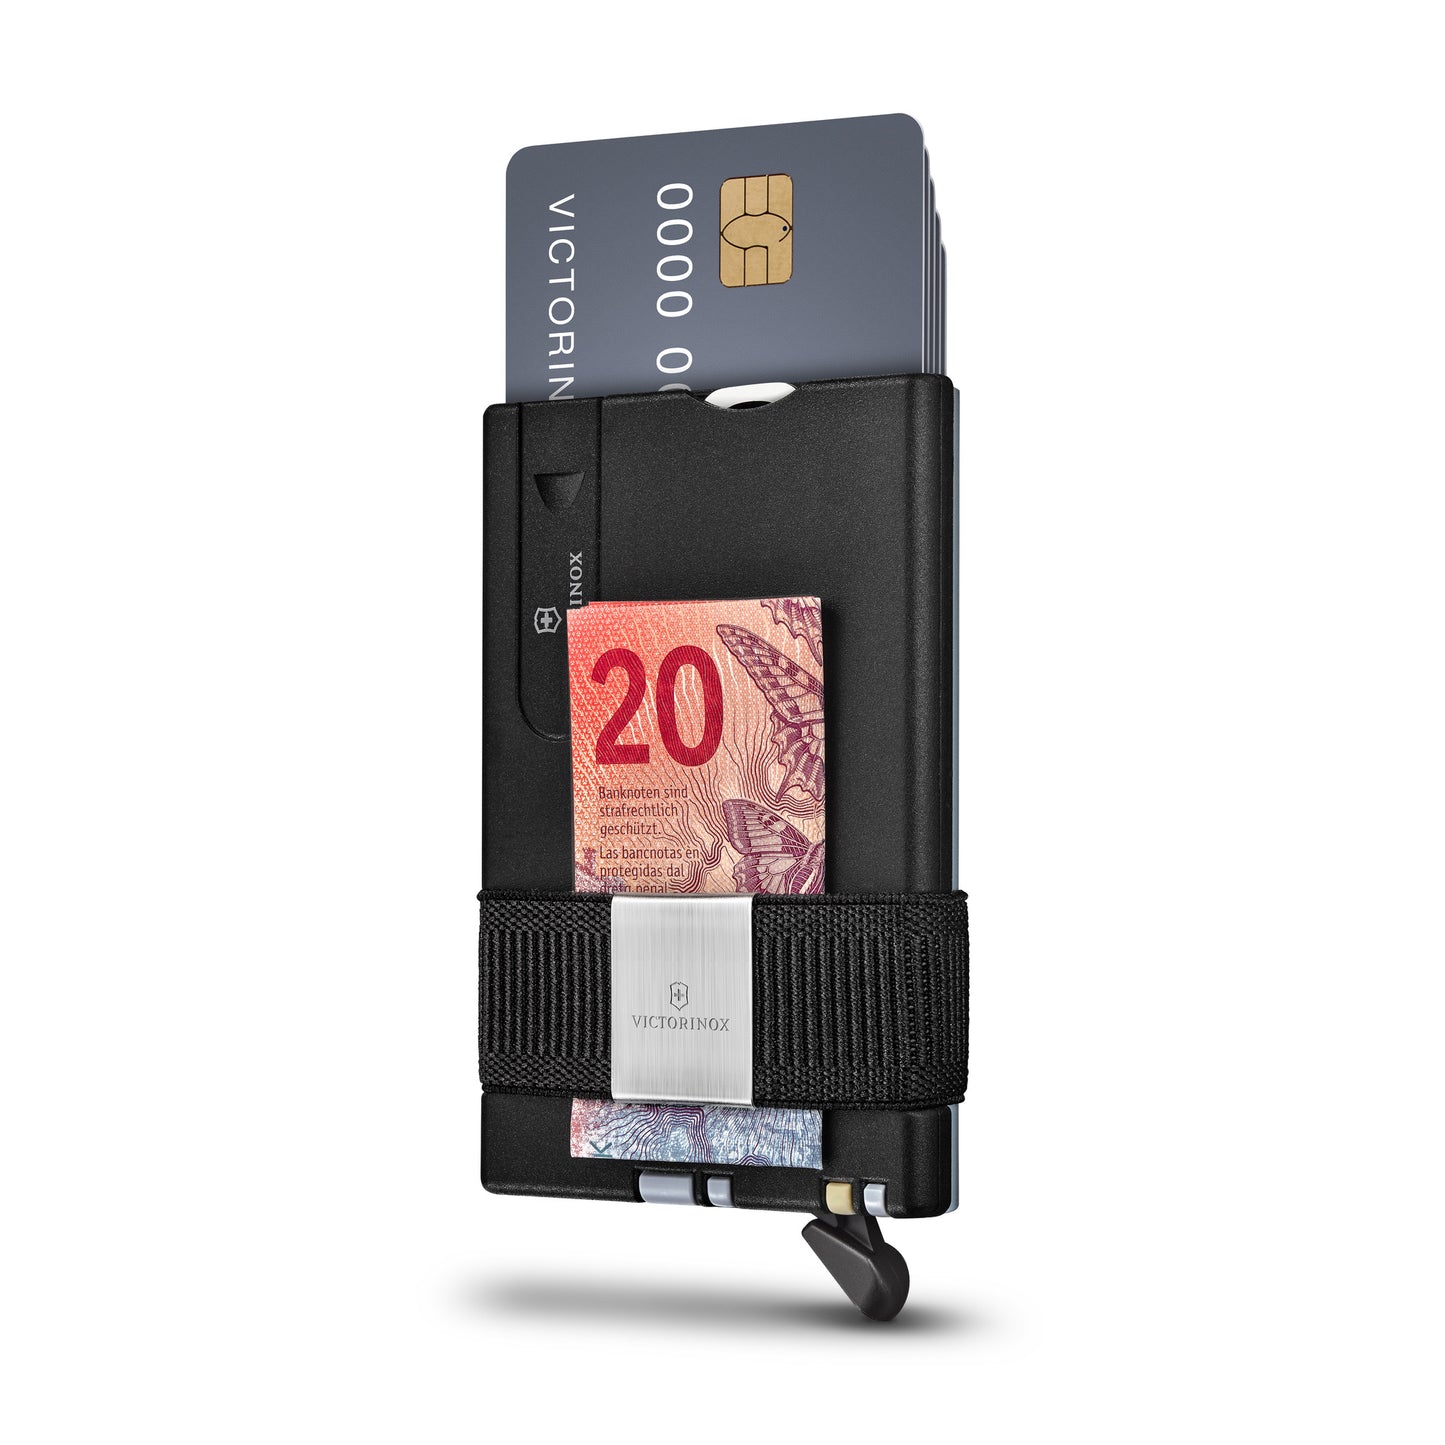 Victorinox Smart Card Wallet BLACK/GRAY